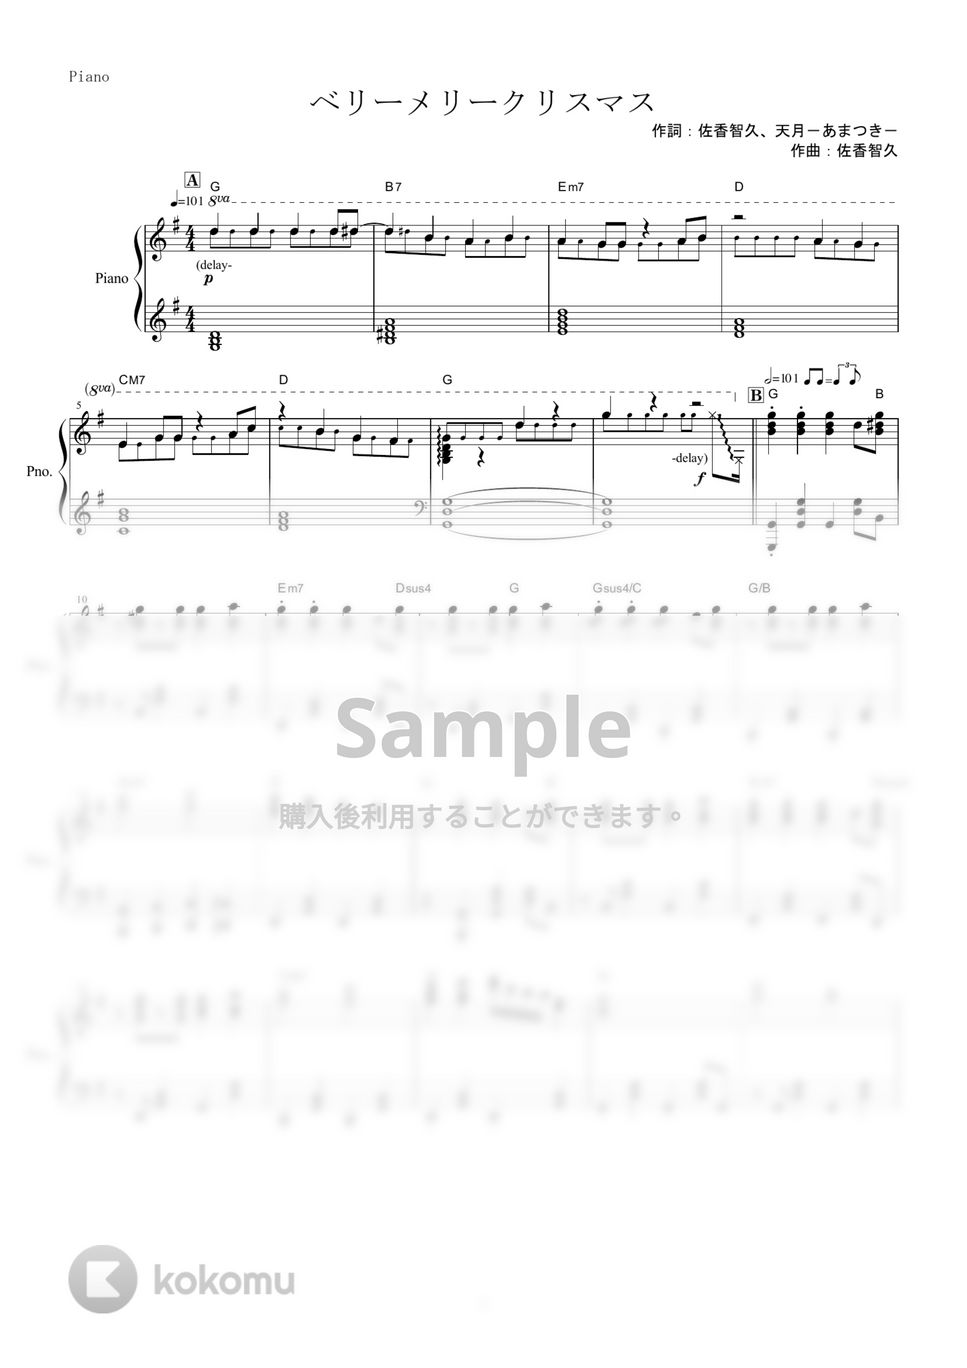 天月-あまつき- - ベリーメリークリスマス (ピアノ楽譜 / 全９ページ) by yoshi